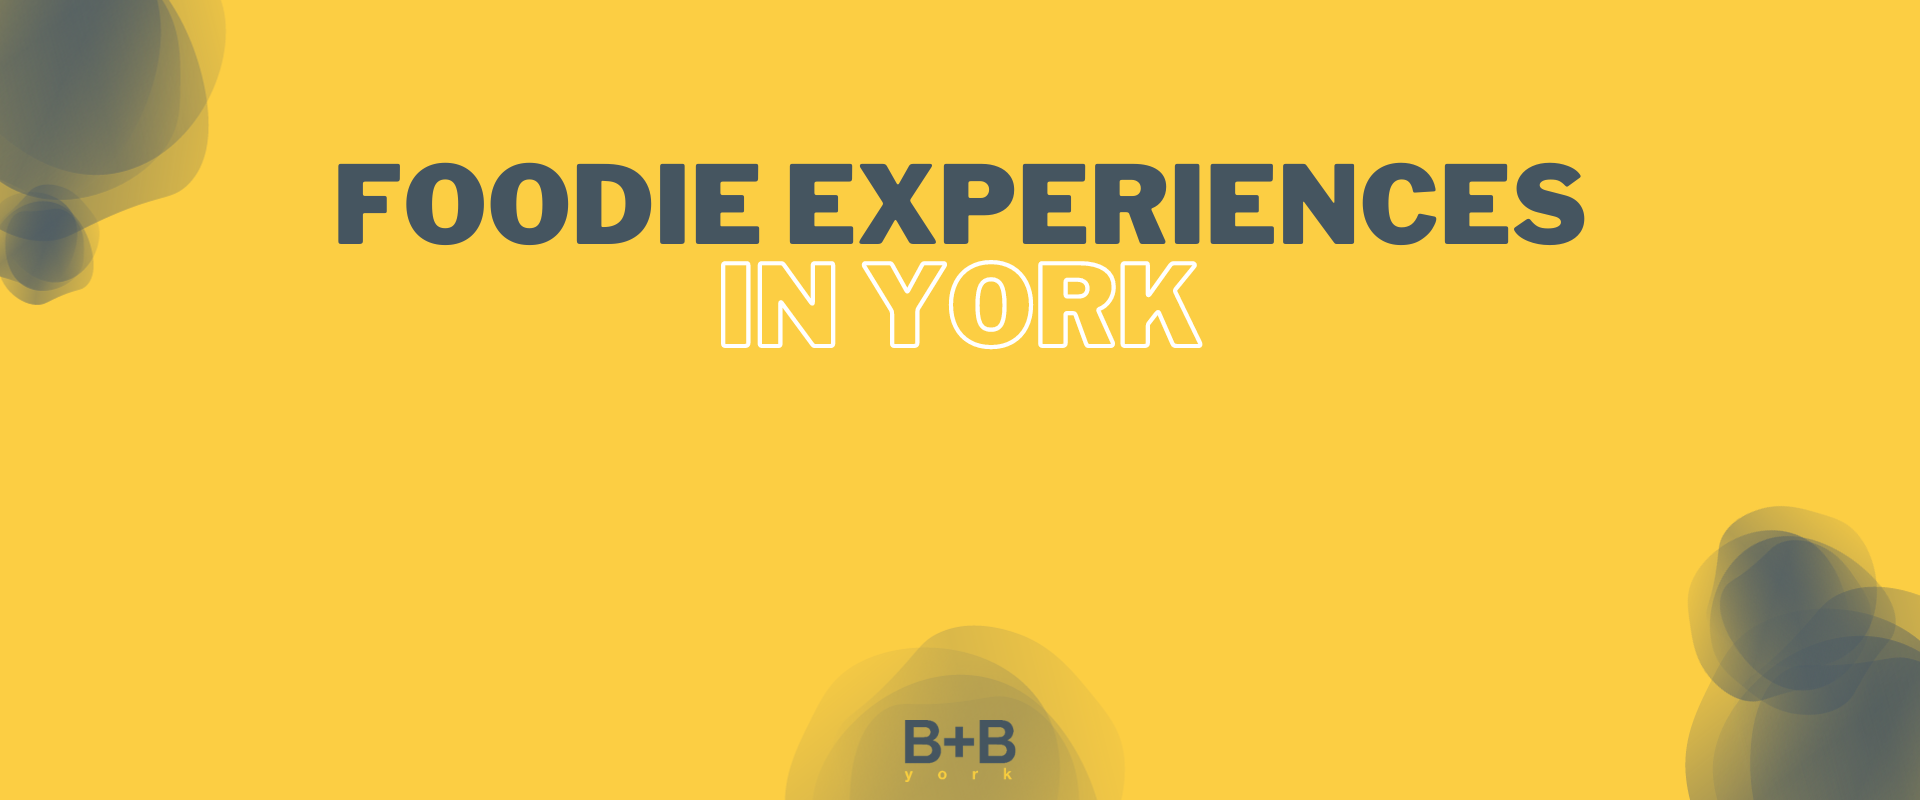 Foodie Experiences in York - B+B York